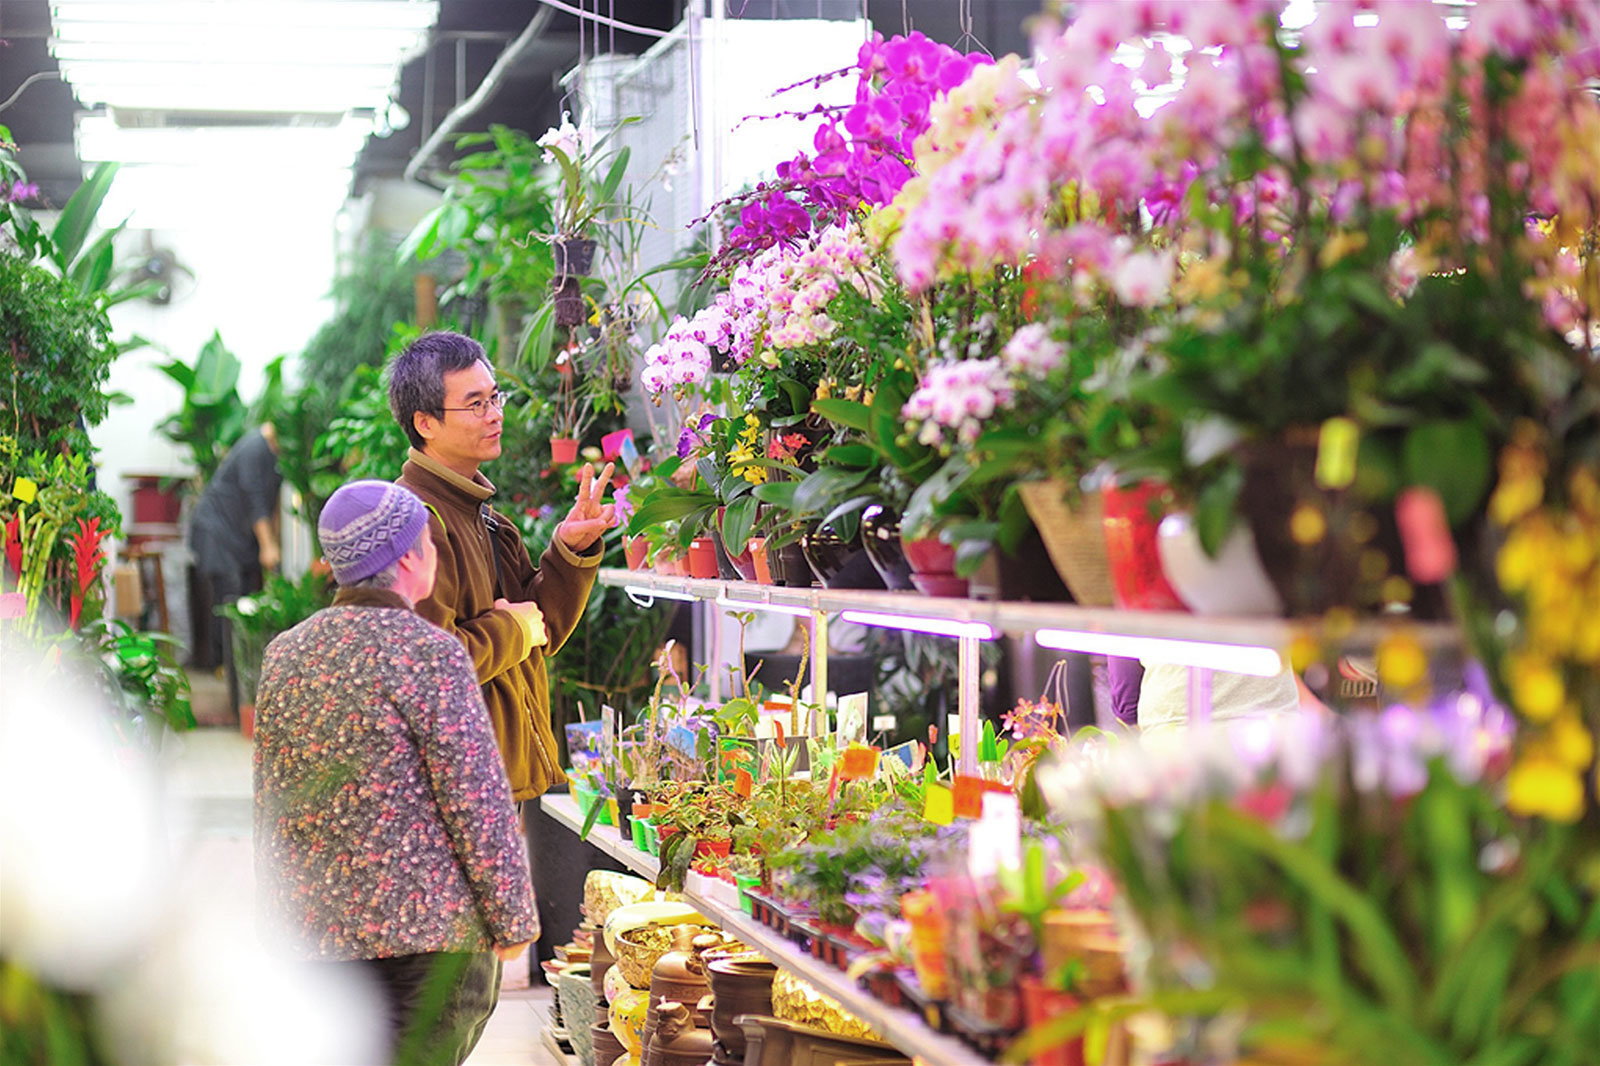 香港人大多喜歡在農曆新年期間到花市選購花卉盆栽